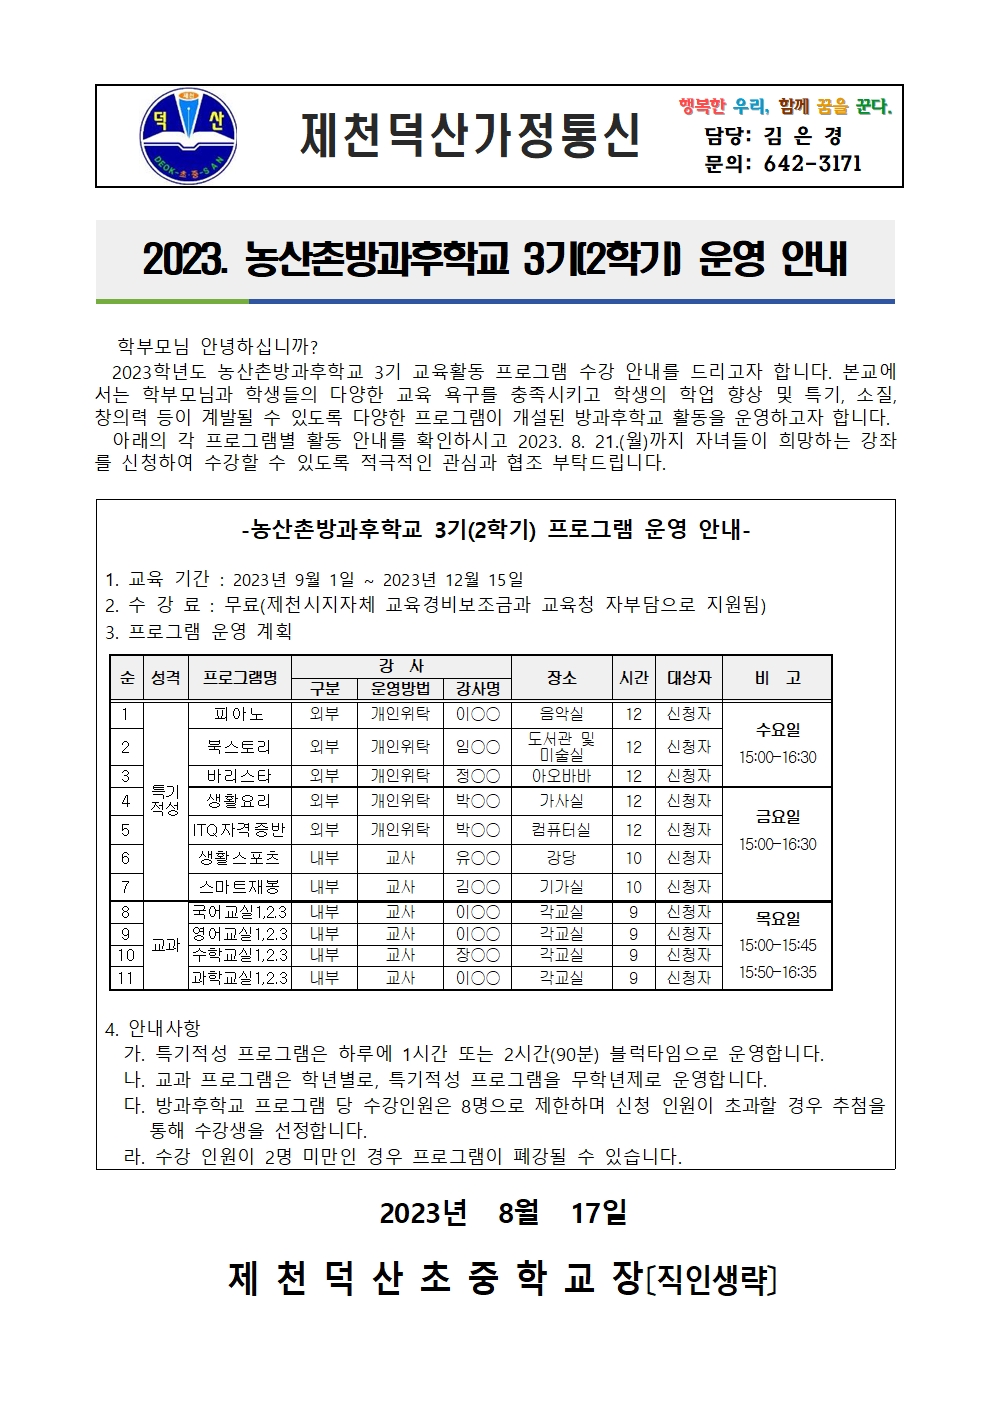 2023. 제천덕산중 농산촌방과후학교 3기 수강 신청 가정통신문001